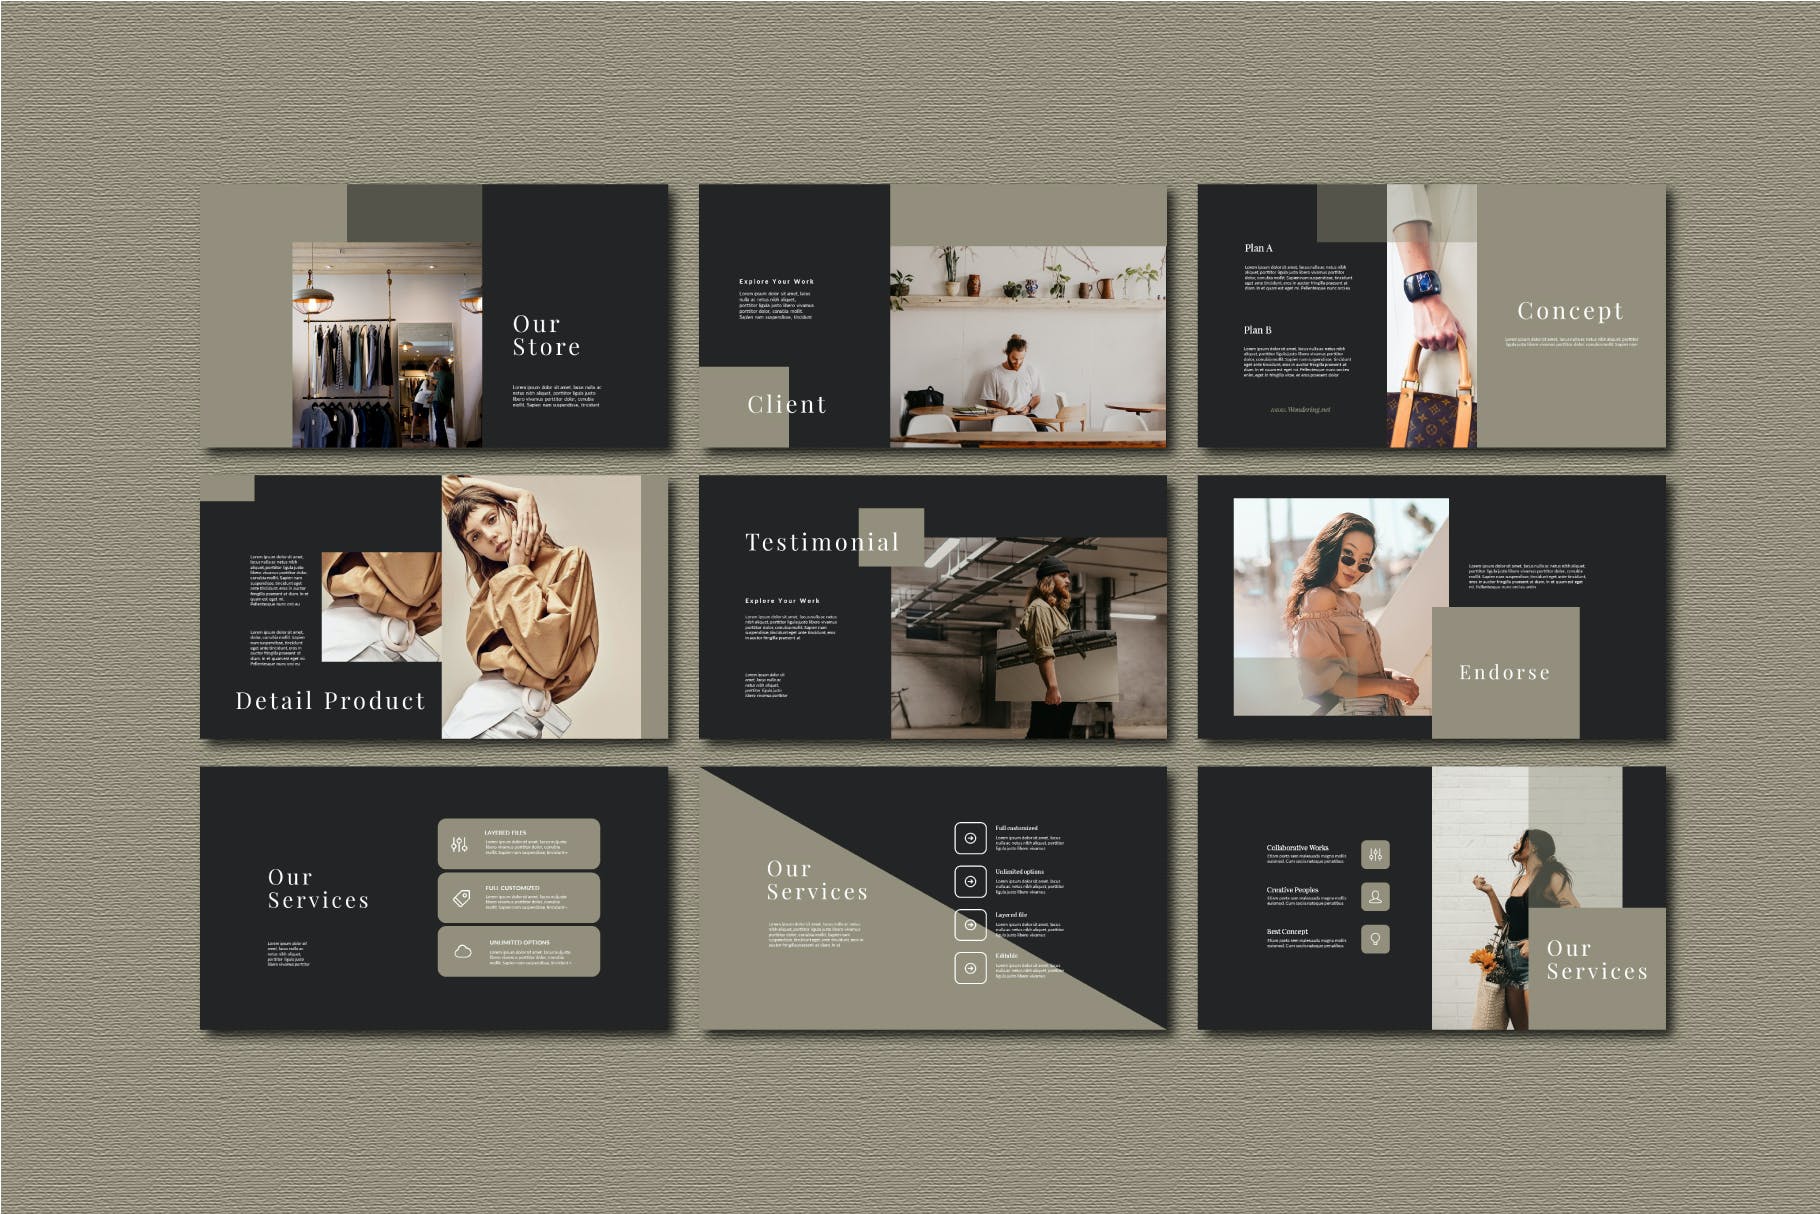 服装品牌欧美风营销PPT幻灯片模板 Agnez – Powerpoint Template设计素材模板